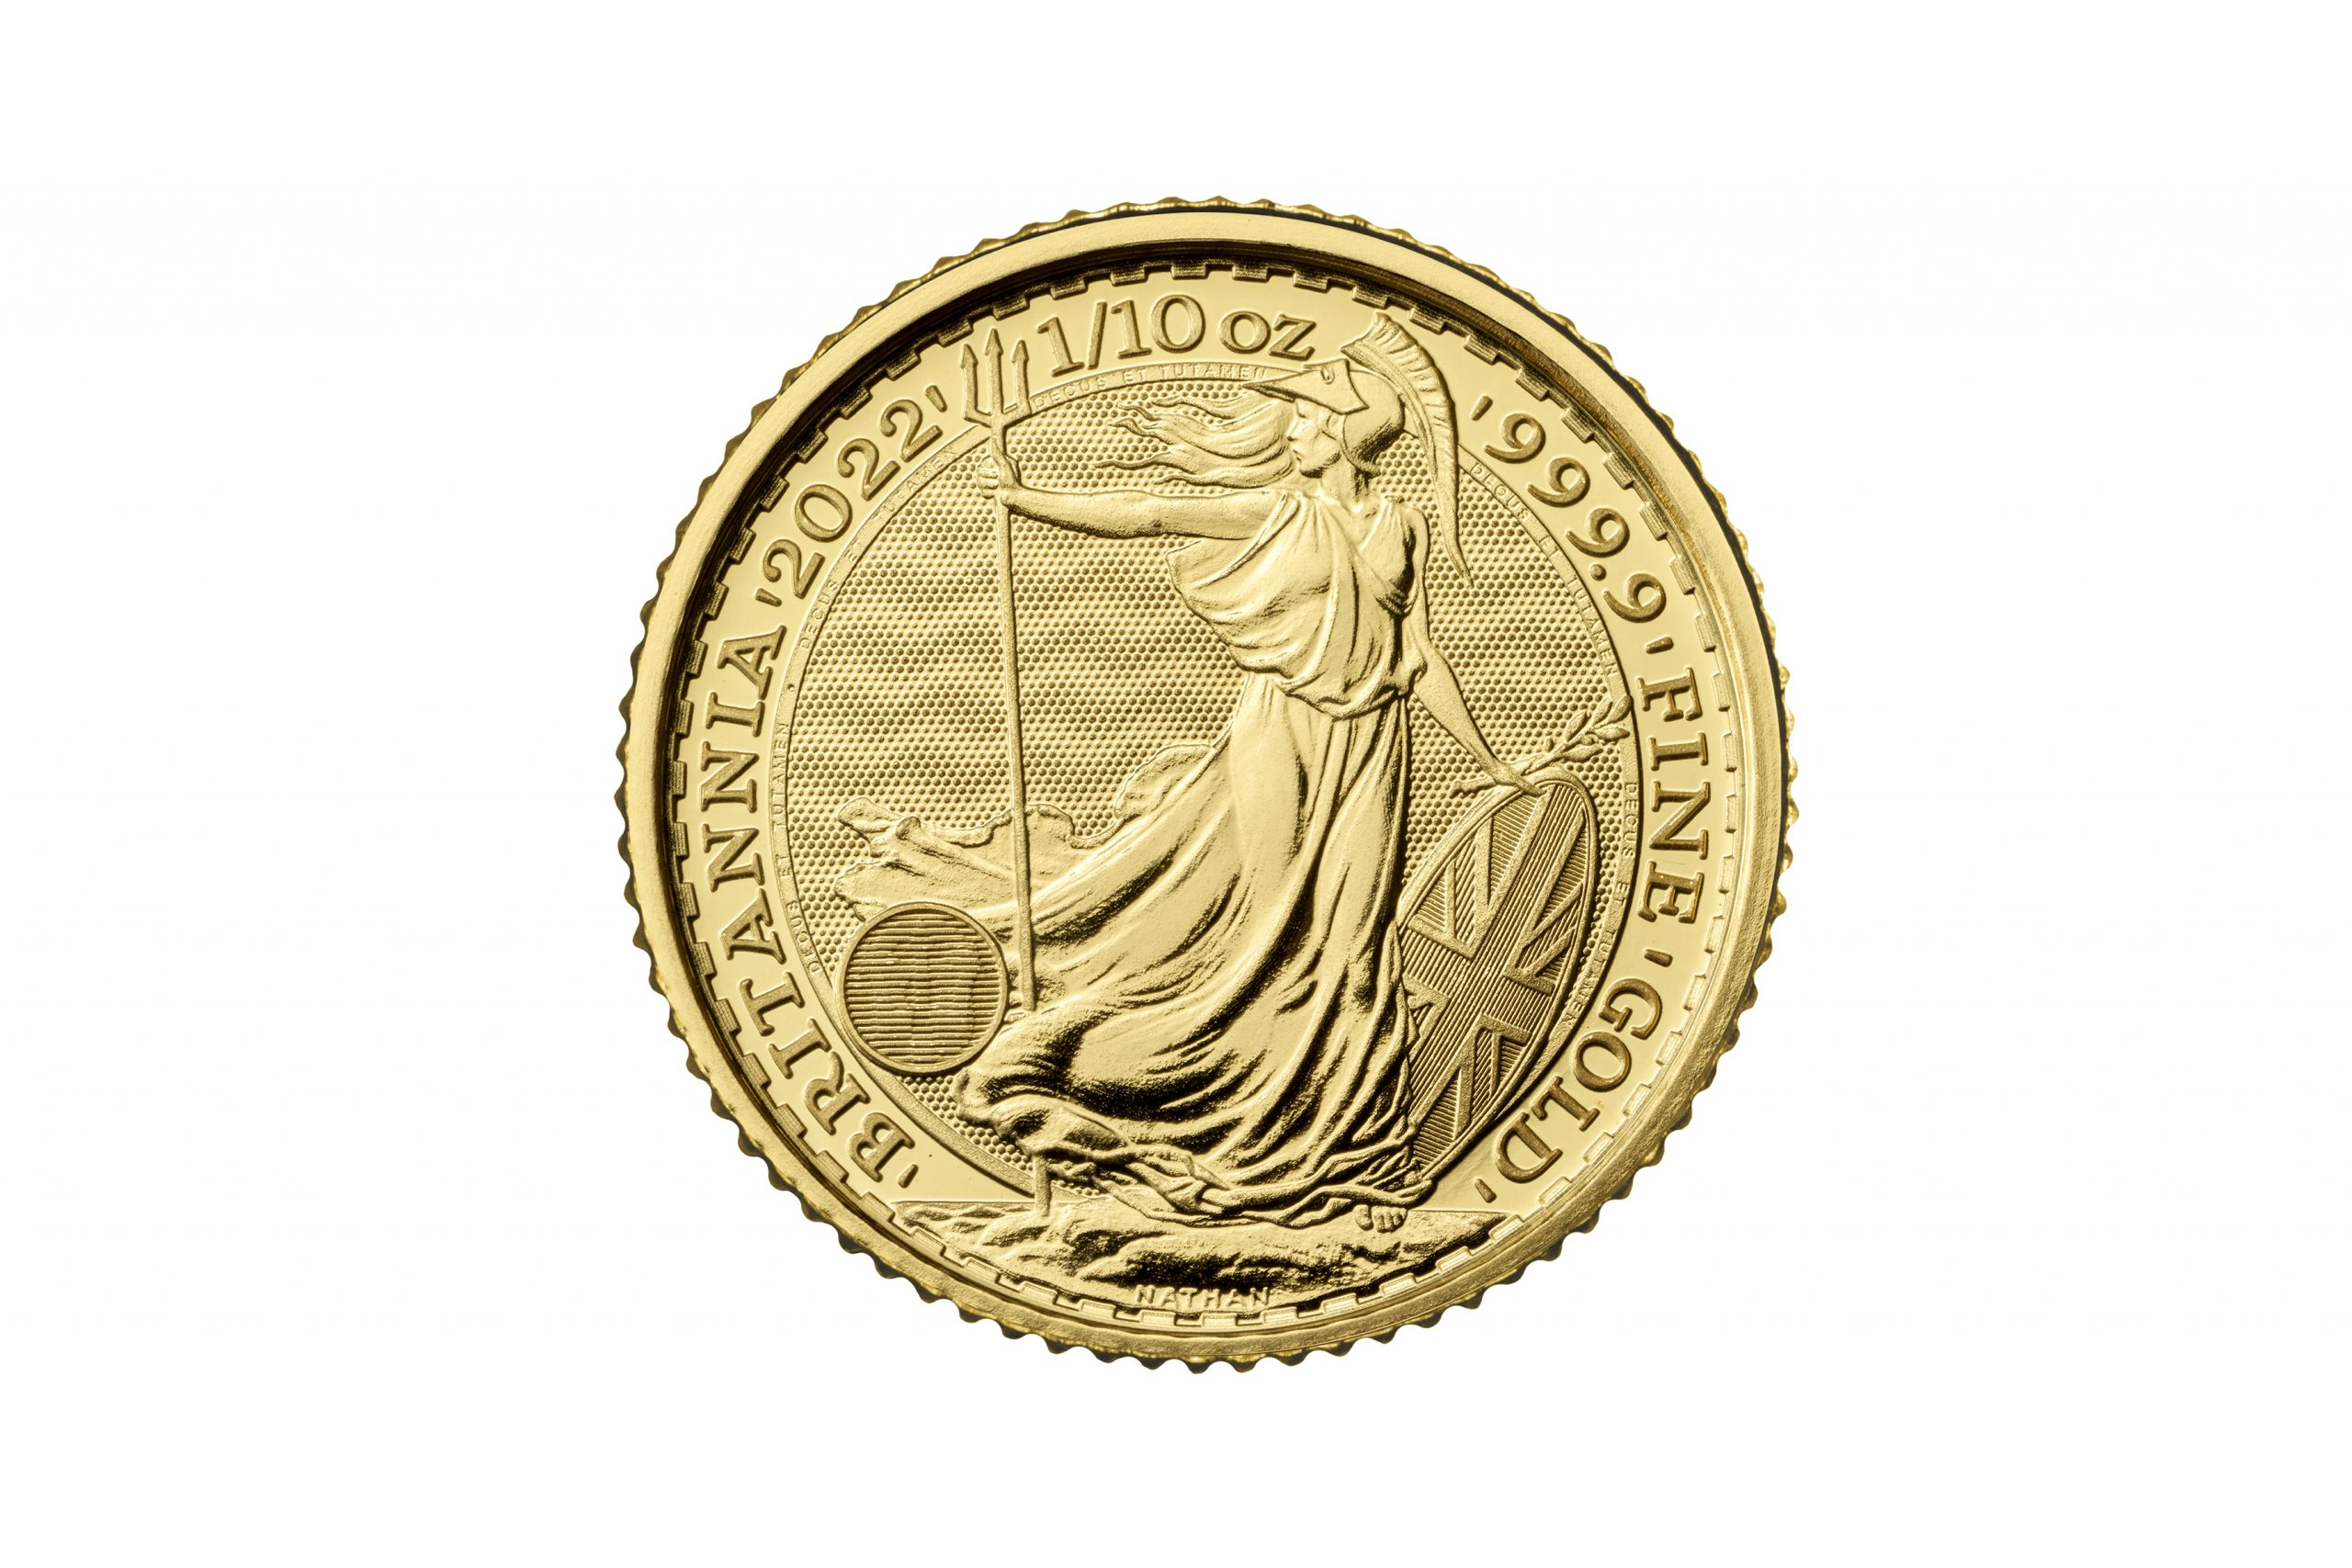 Baird & Co.'s 1/10th oz Gold Britannia Coin worth £173.